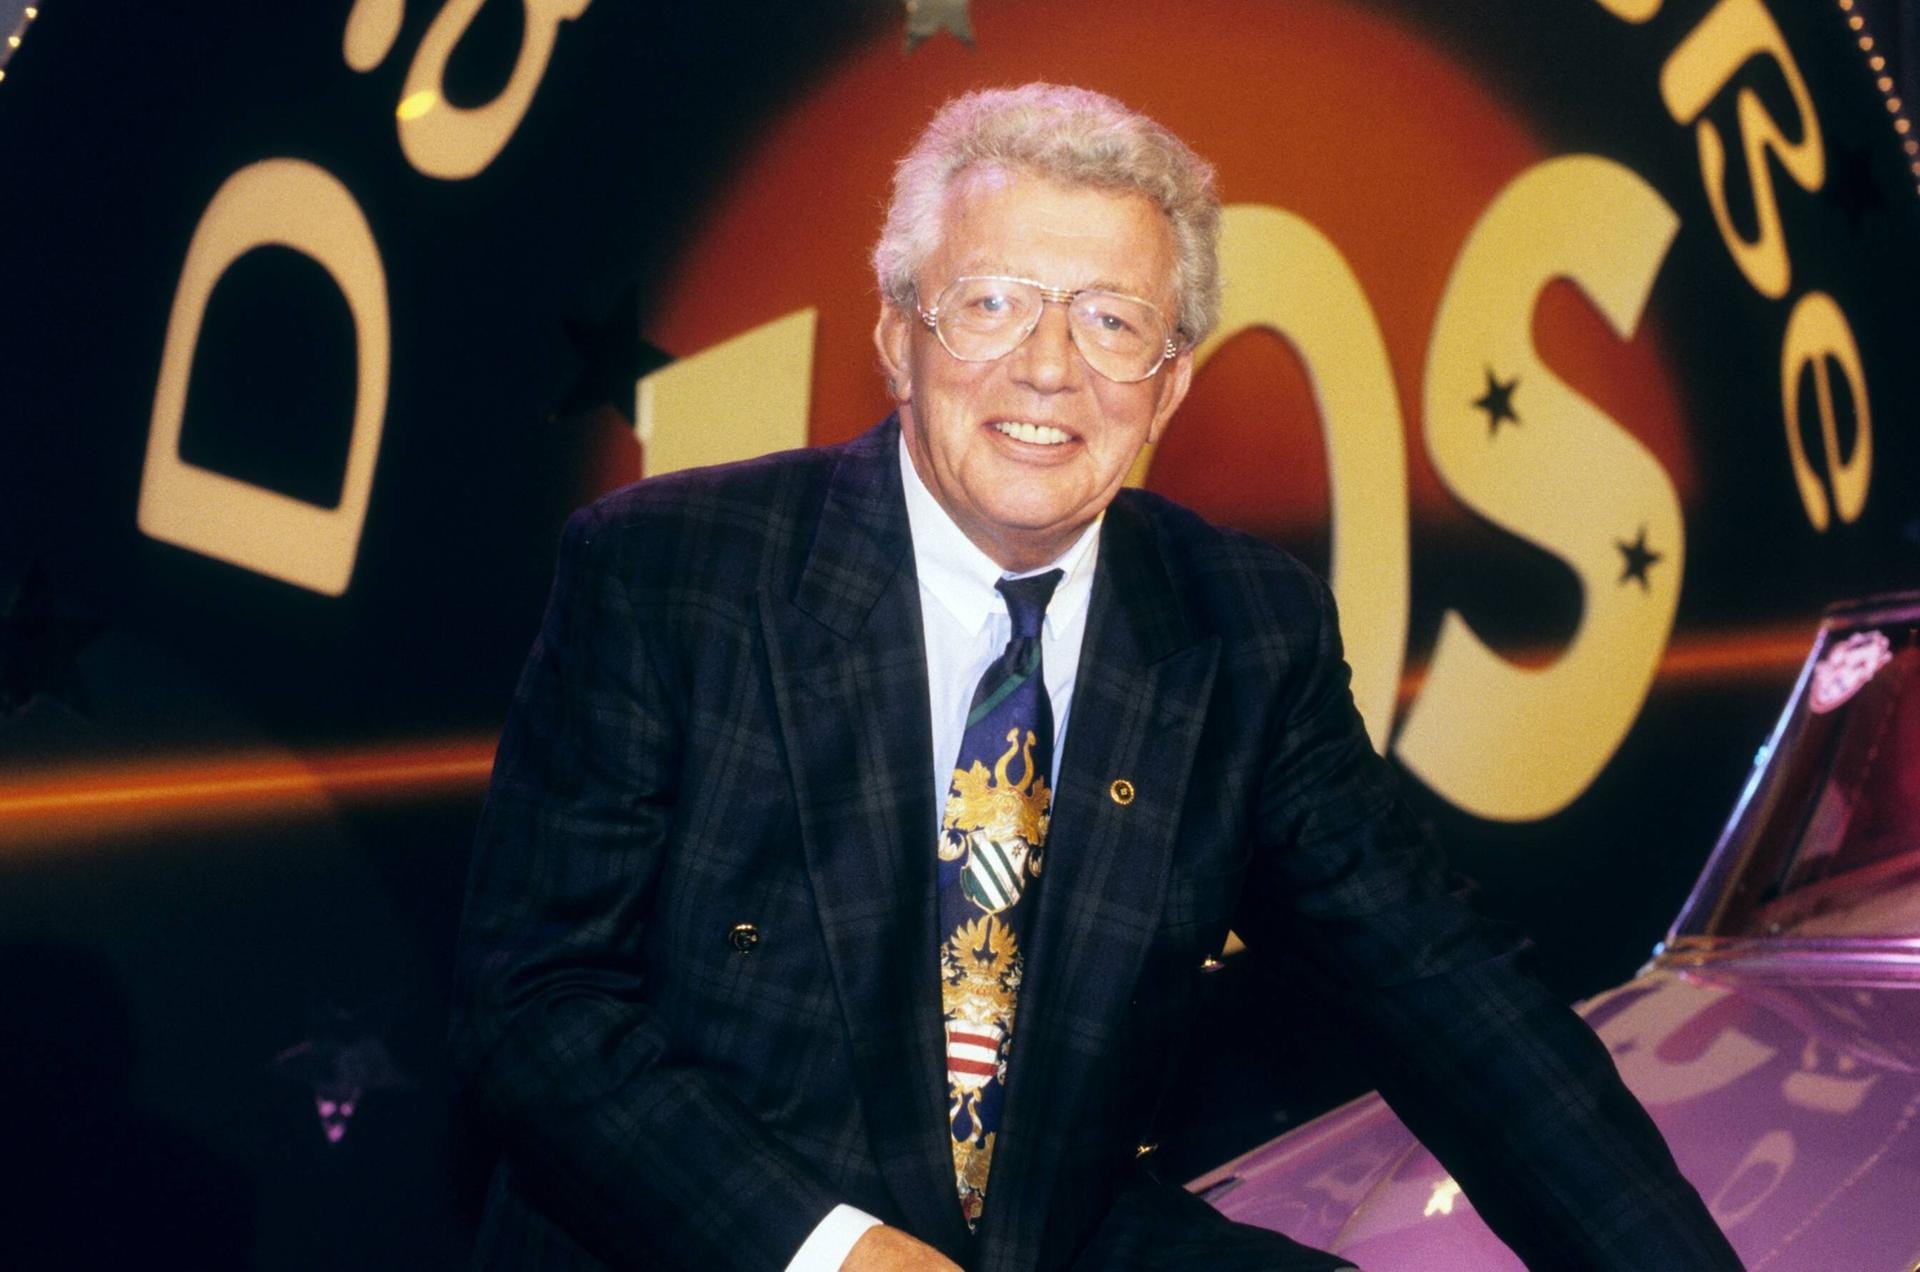 Auch nach seiner Zeit bei der Hitparade war Dieter Thomas Heck sehr häufig im TV zu sehen. Vor allem große Shows und Galas, wie hier "Das große Los" (1997), wurden sein Metier.